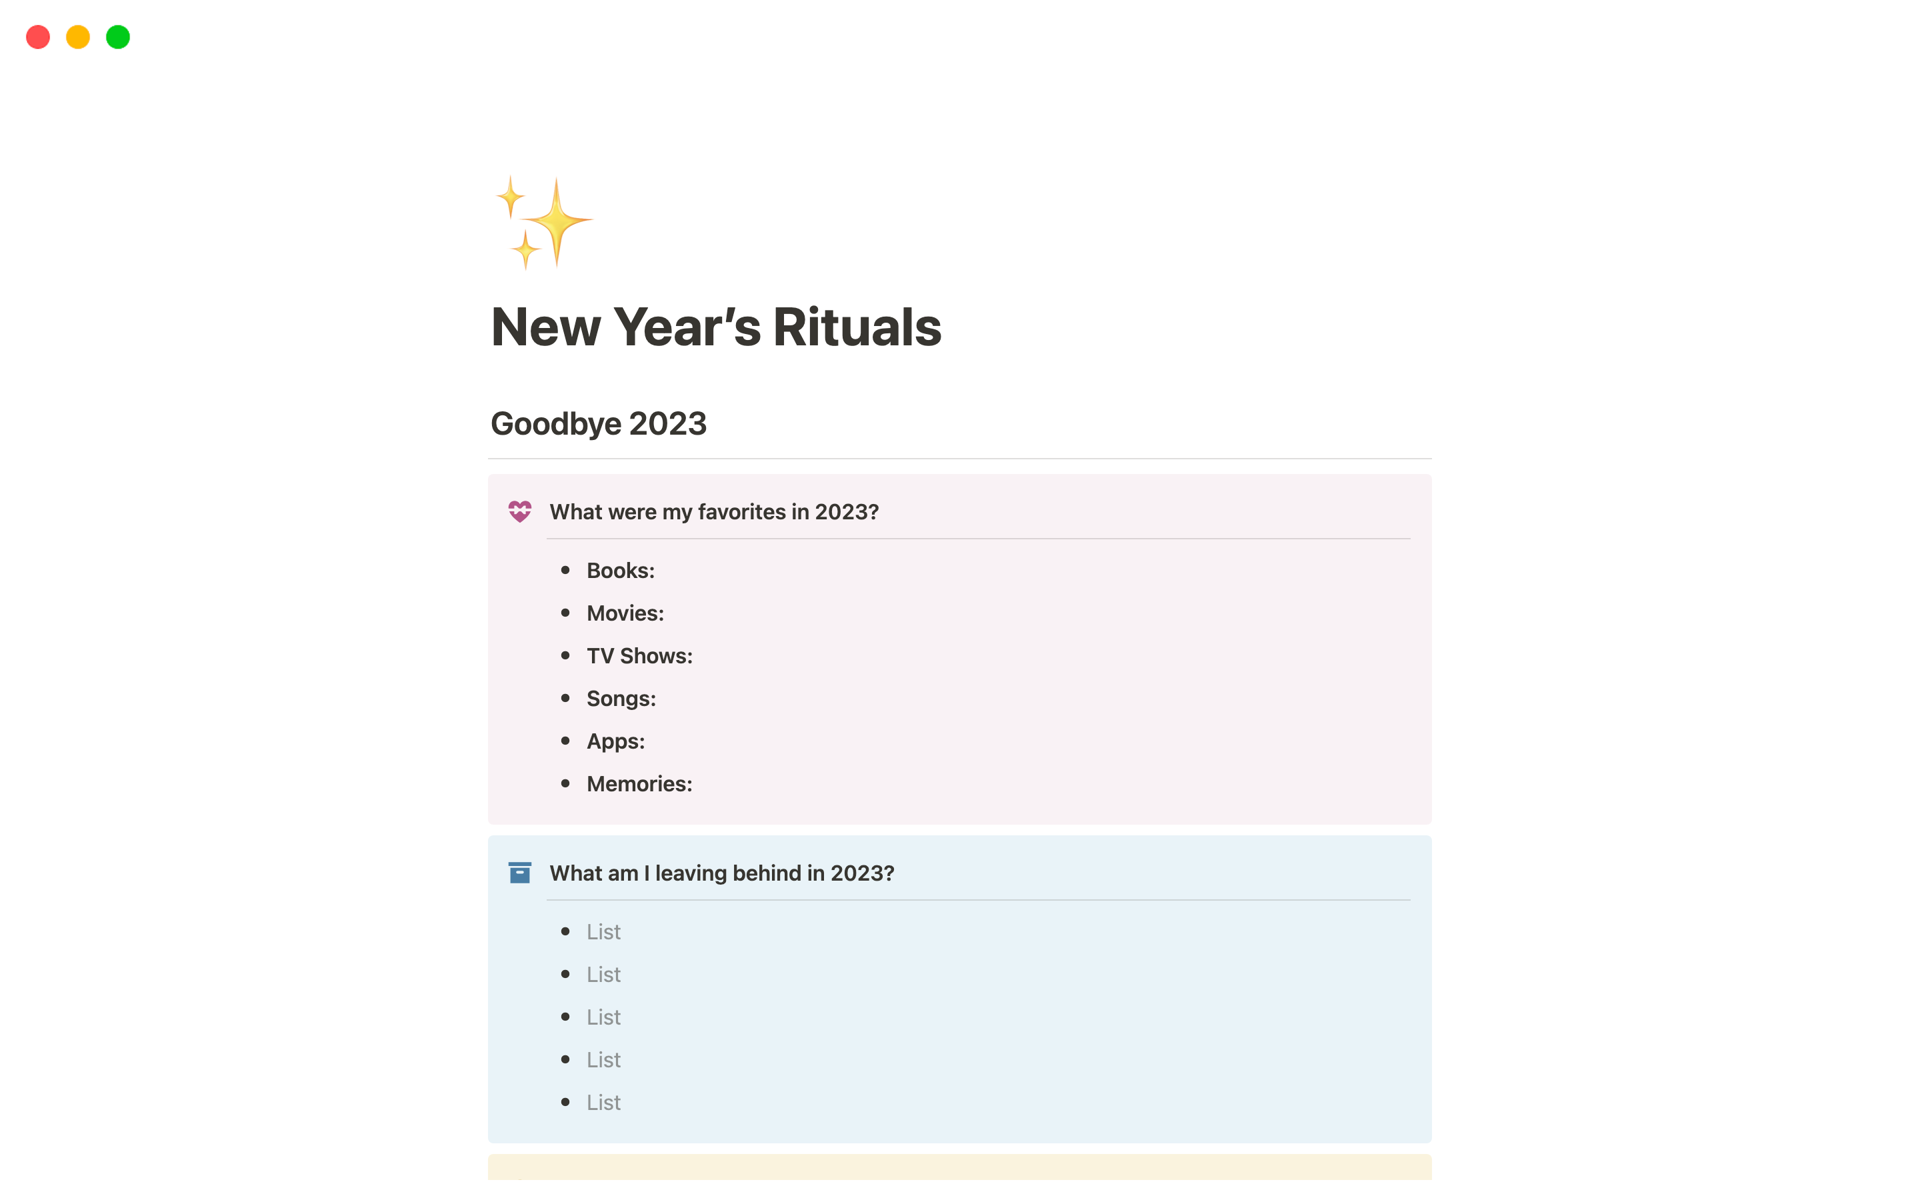 Vista previa de una plantilla para New Year’s Rituals